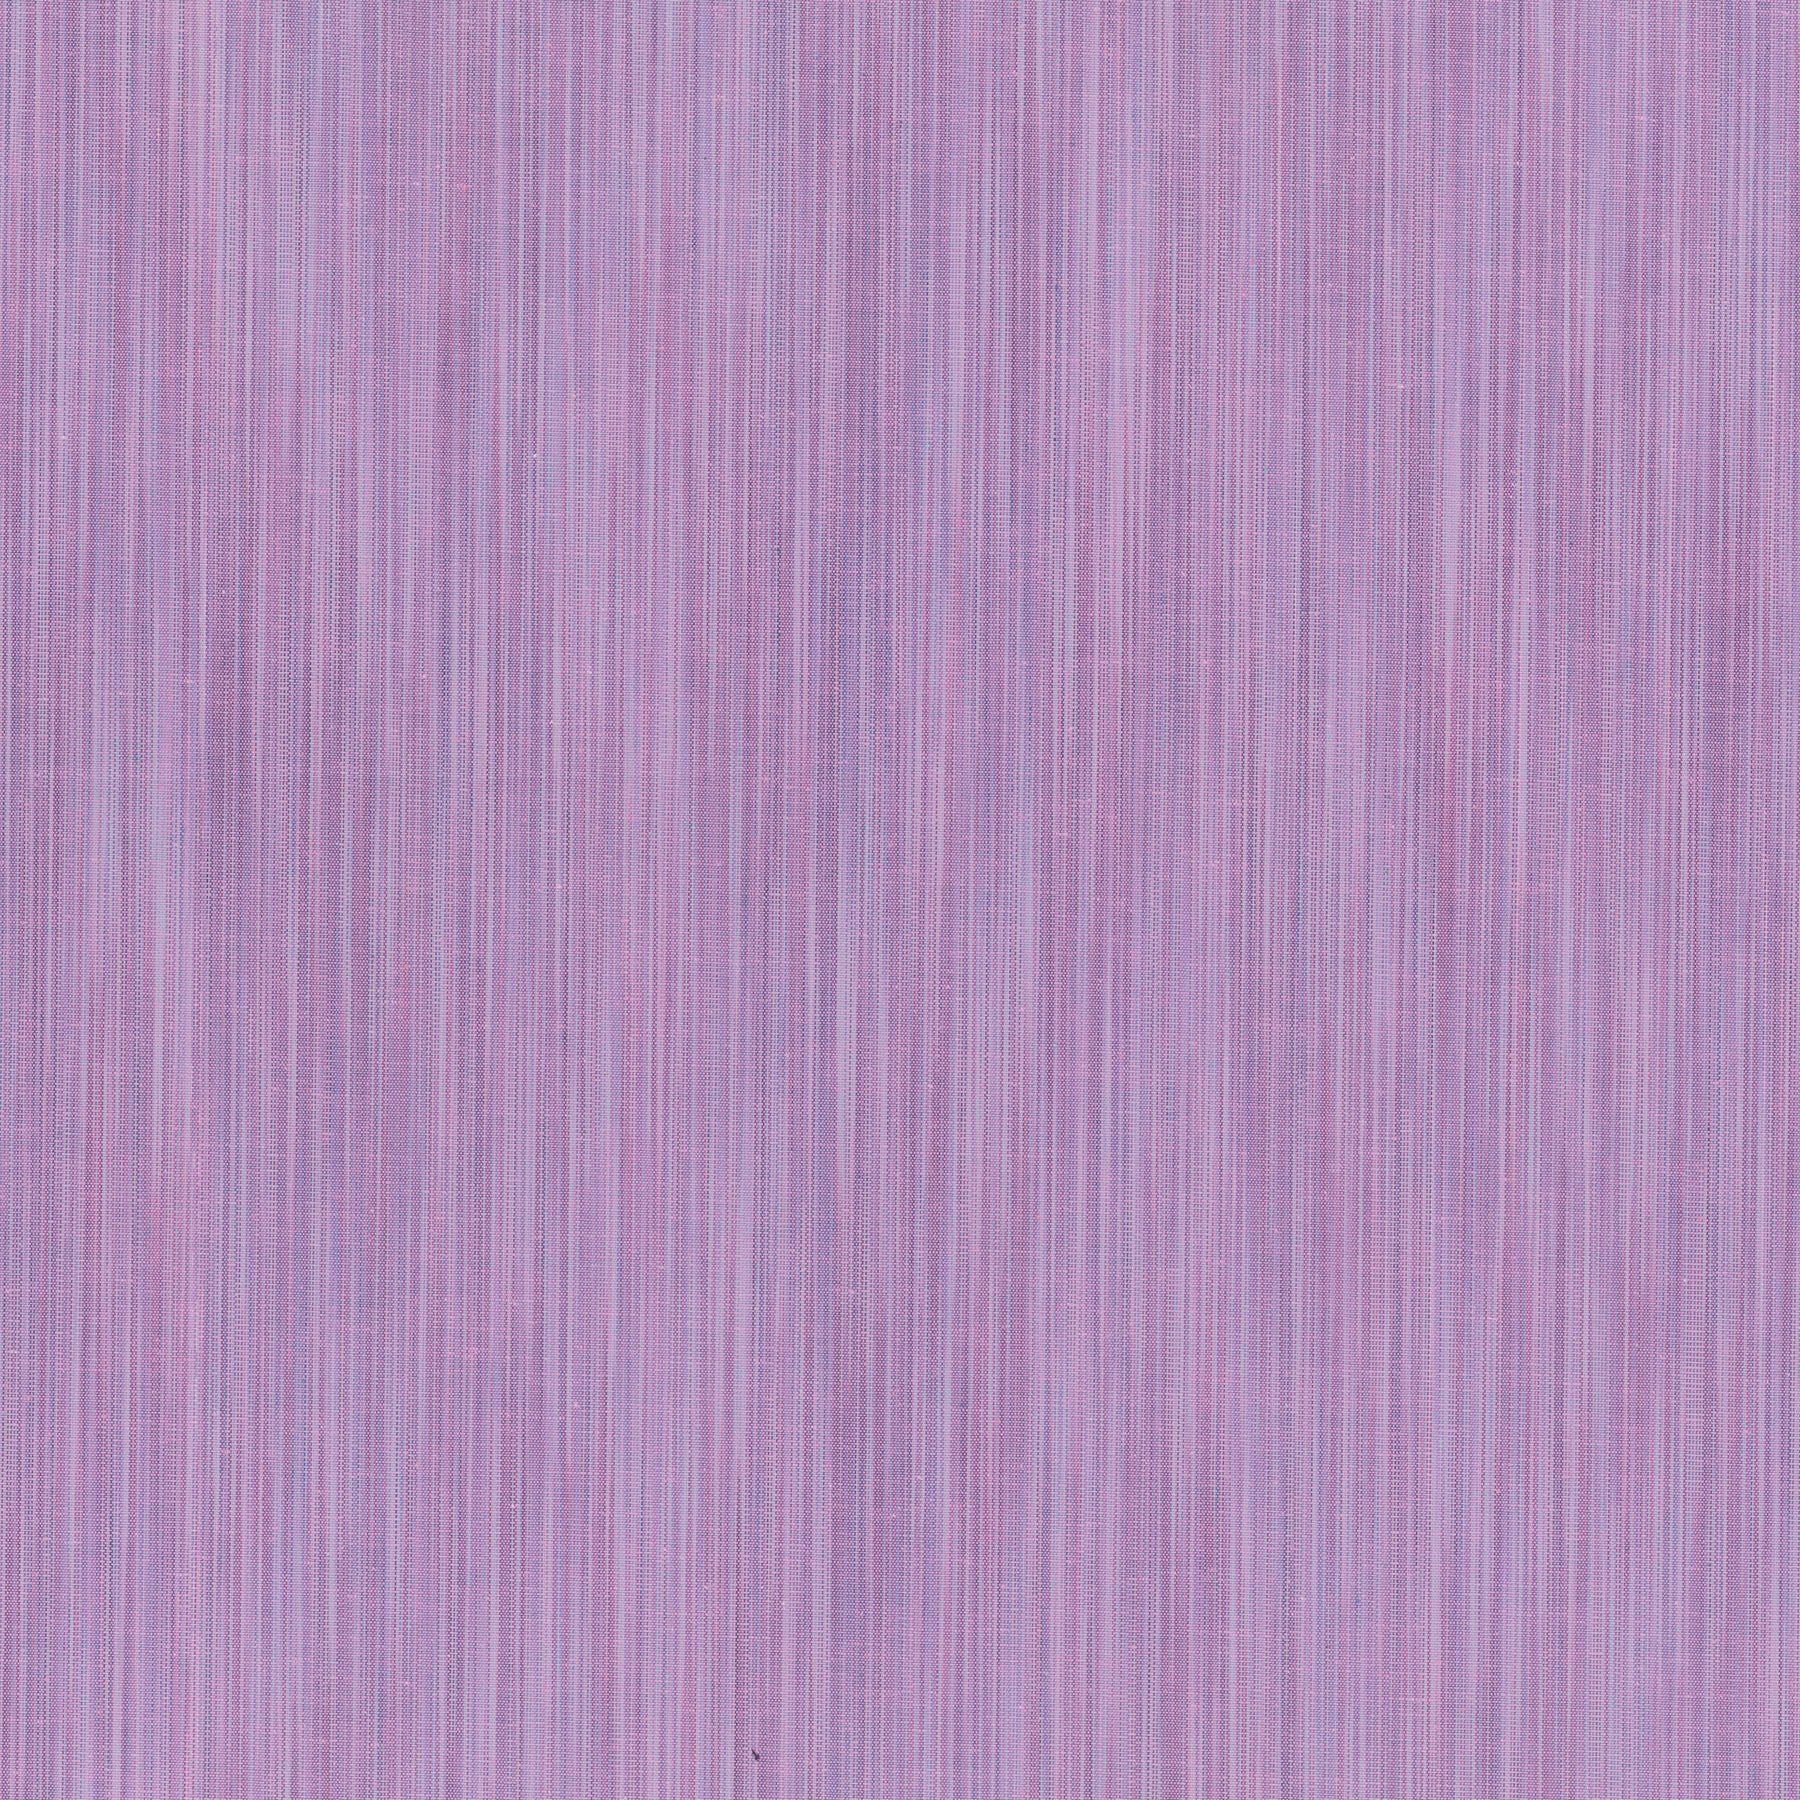 Fabric, Space Dye Woven, Lavender W90830-81